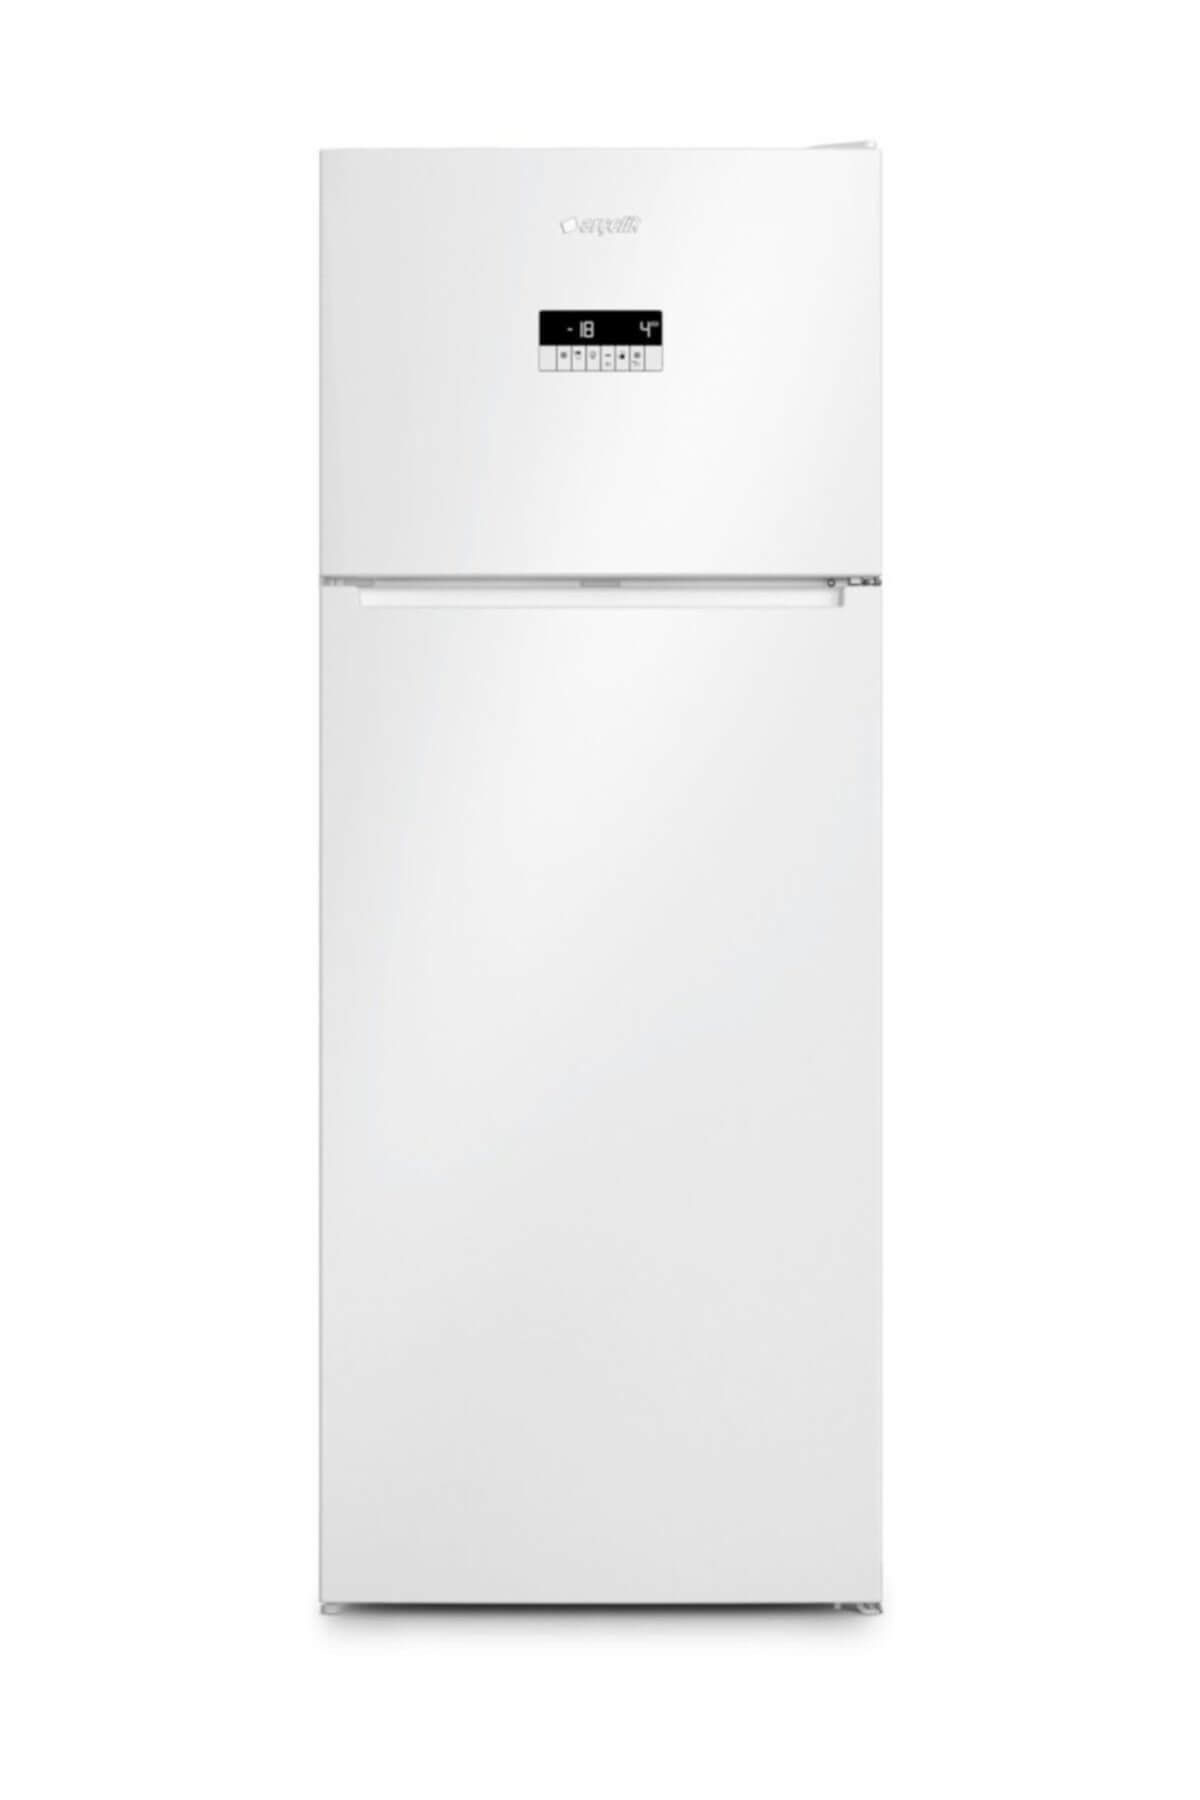 Arçelik 570505 EB A++ Çift Kapılı No-Frost Buzdolabı